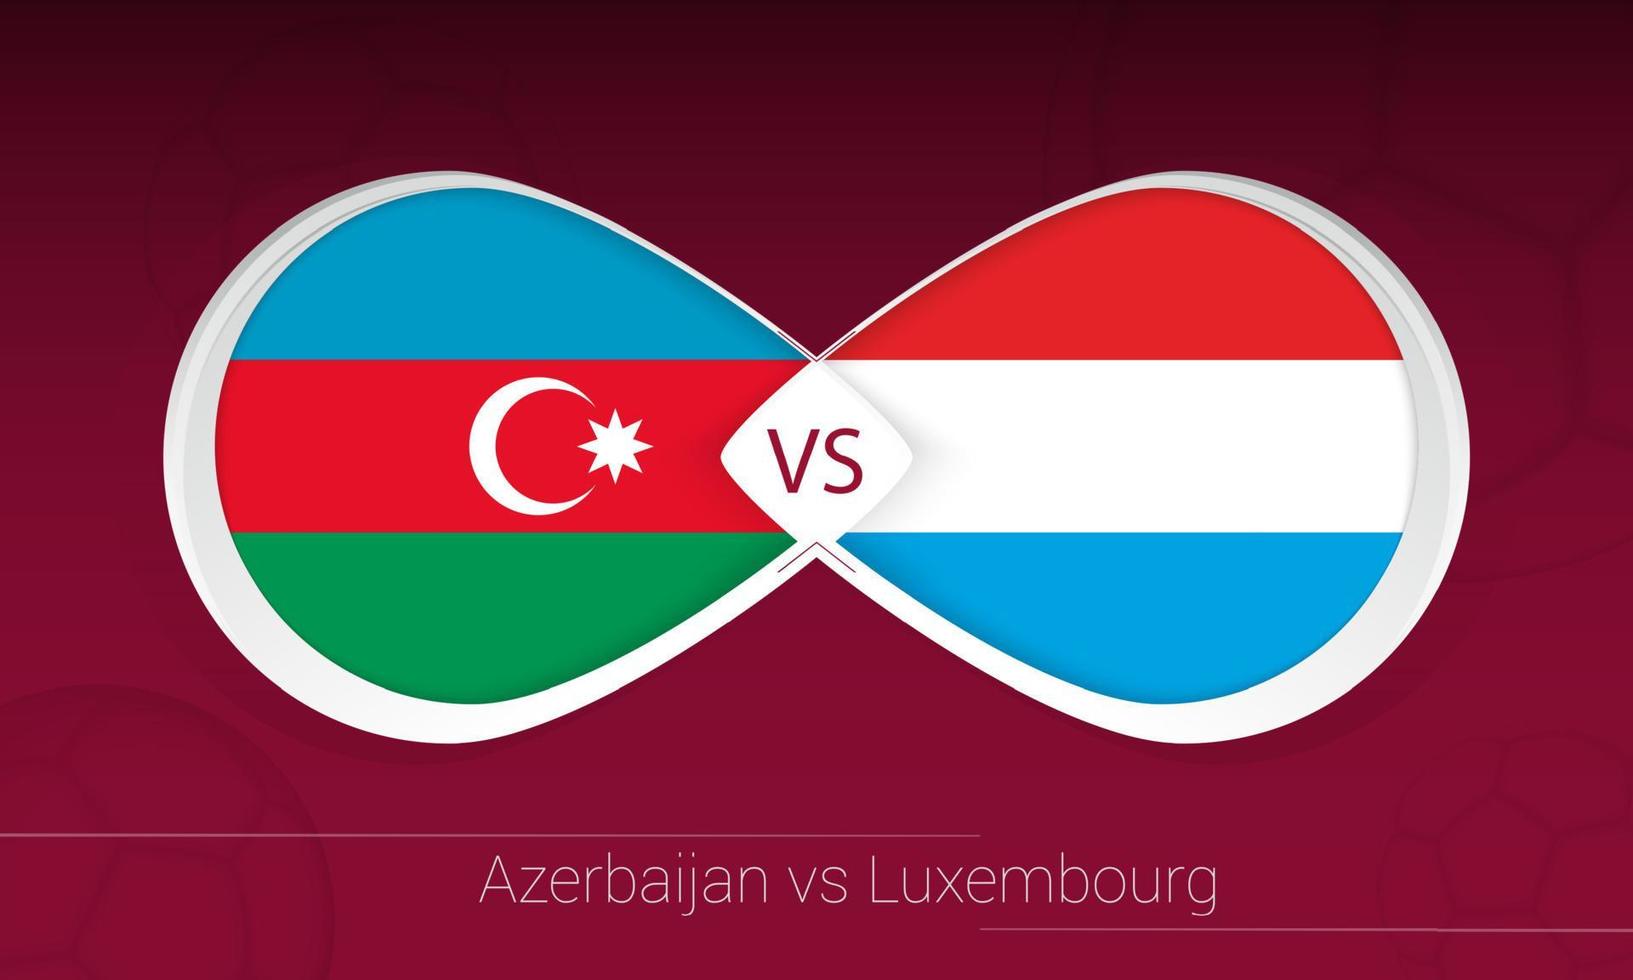 azerbeidzjan vs luxemburg in voetbalcompetitie, groep a. versus pictogram op voetbal achtergrond. vector